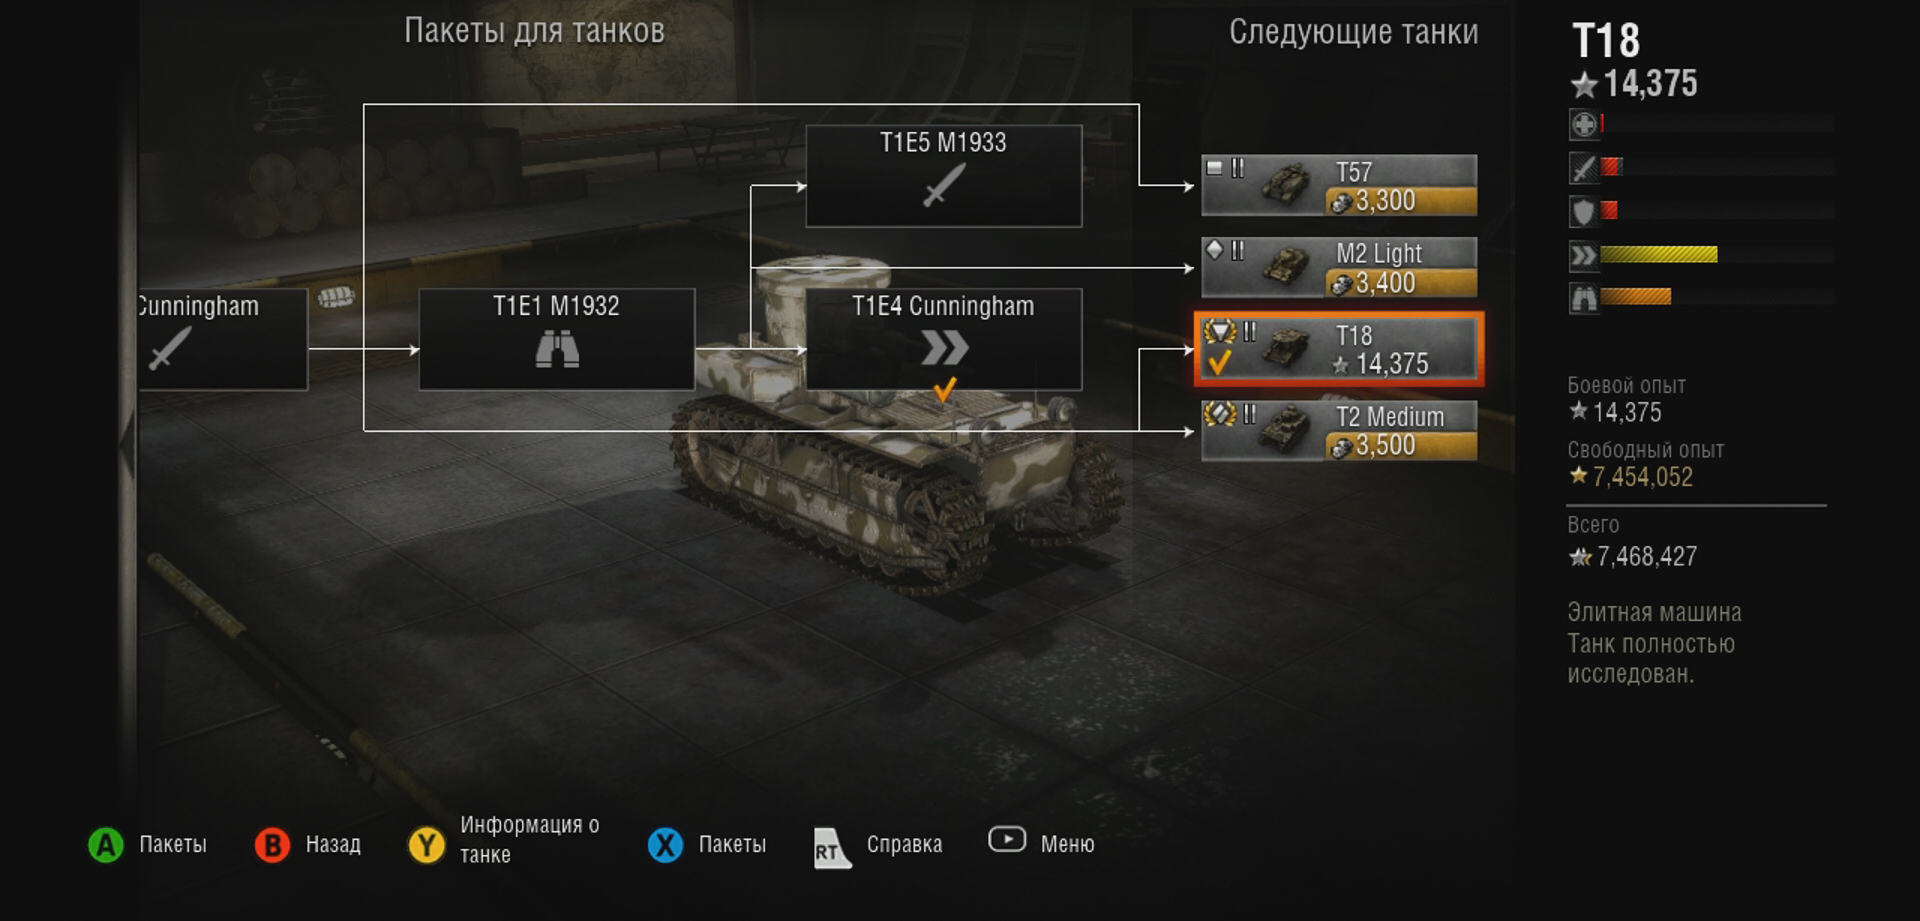 Как изменить разрешение экрана в world of tanks не заходя в игру